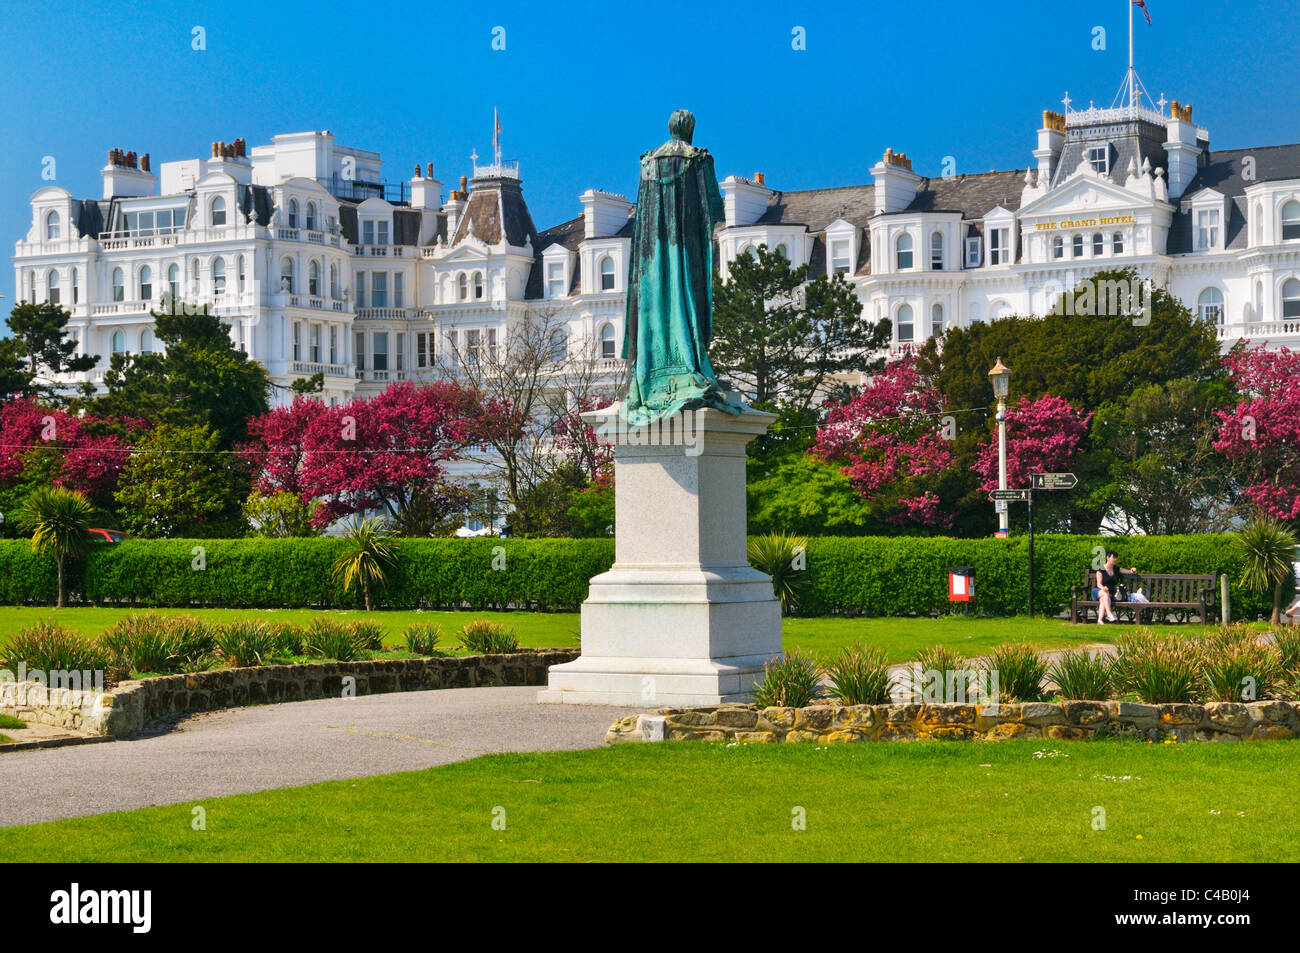 Statue du duc de Devonshire sur les pelouses de l'Ouest faisant face au Grand Hotel, Eastbourne, East Sussex, UK Banque D'Images